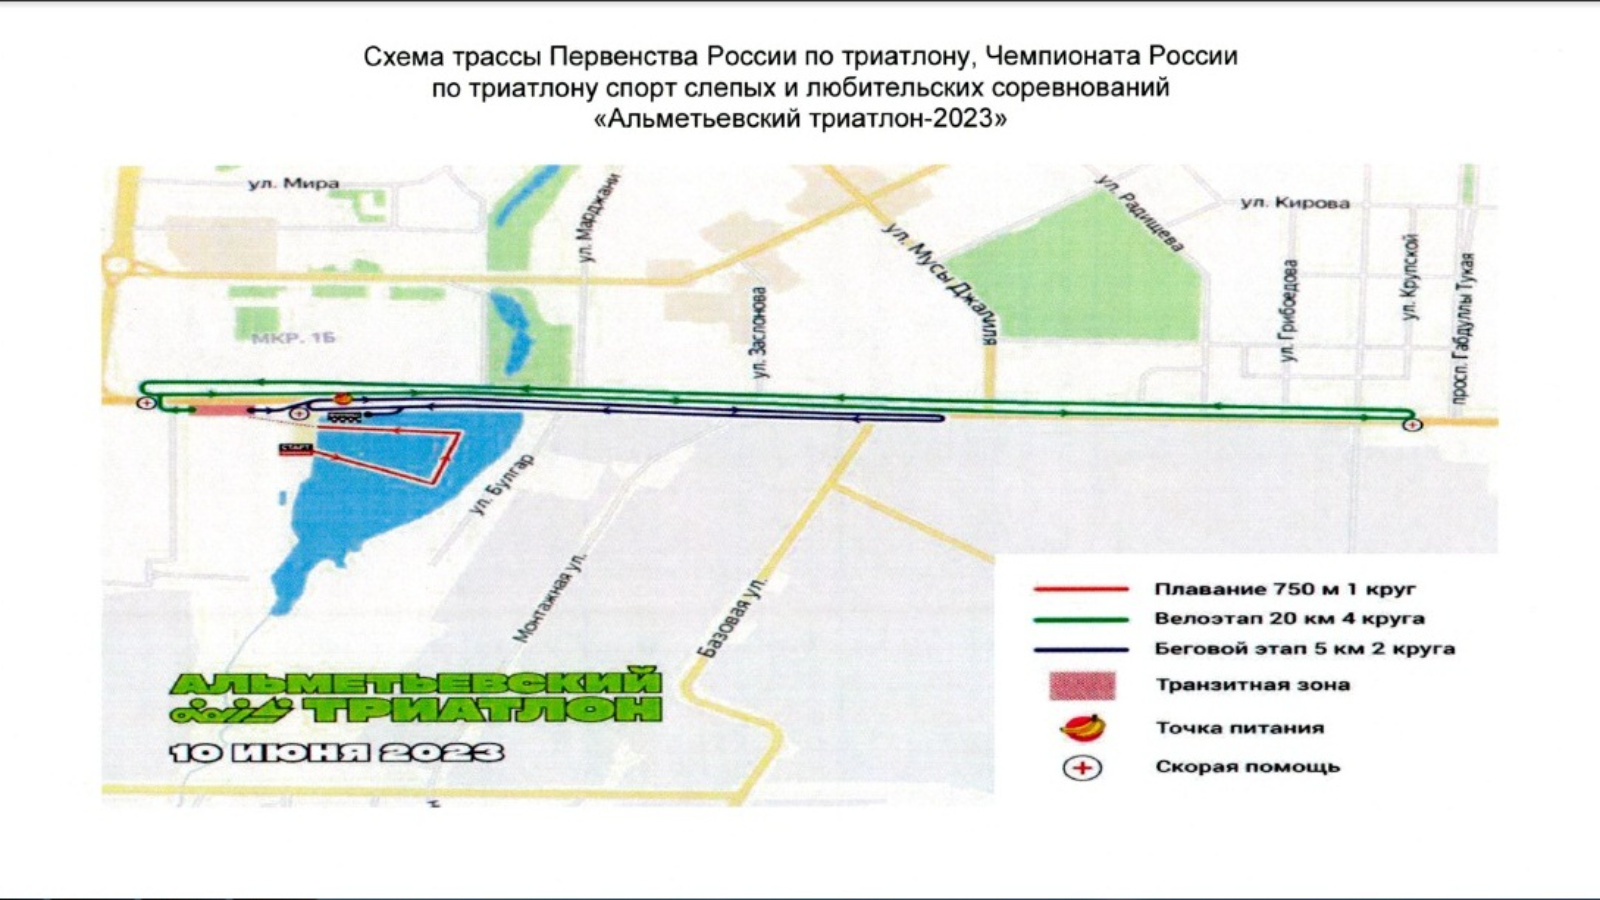 Схема перекрытия дорог в Альметьевске в связи с соревнованиями по триатлону 2023